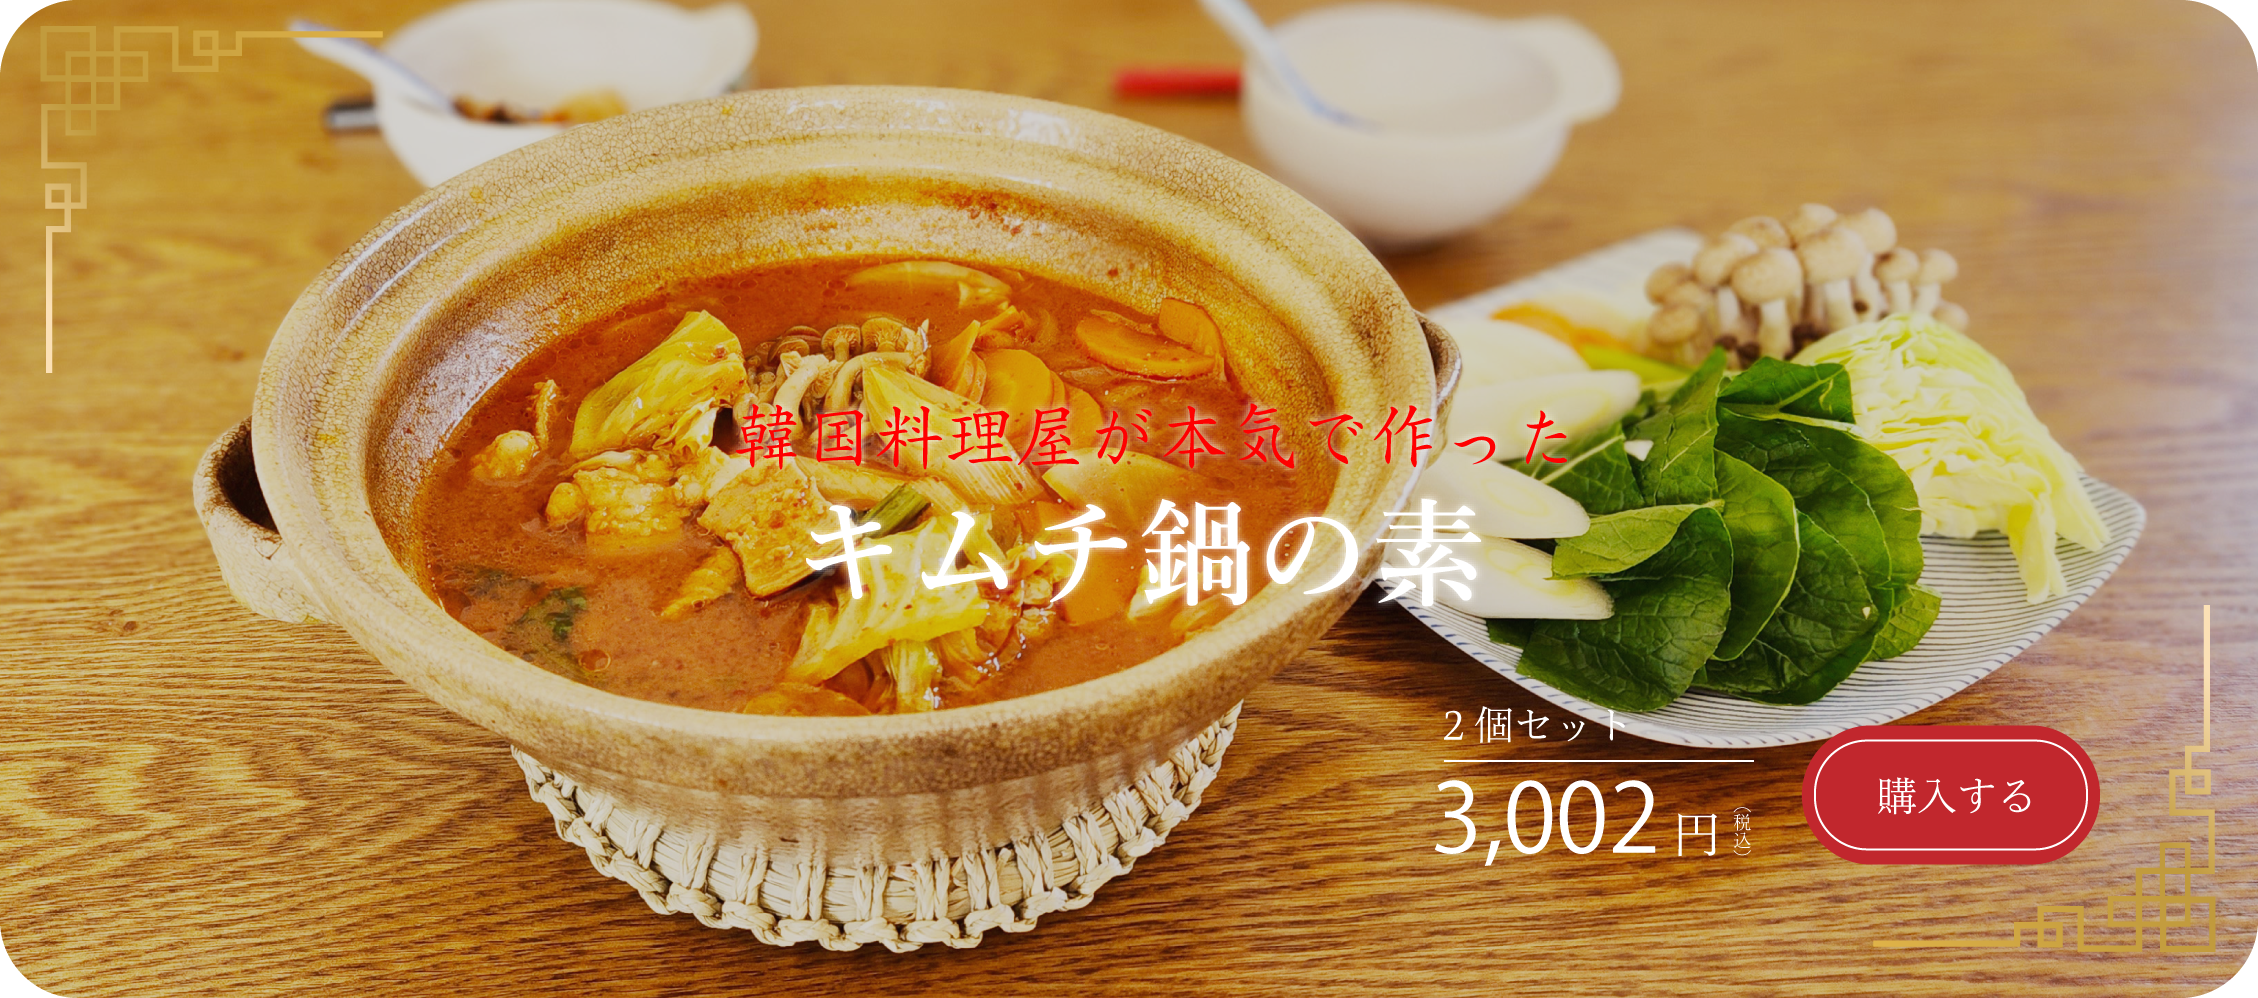 韓国料理屋が本気で作ったキムチ鍋の素2個セット3,002円(税込)